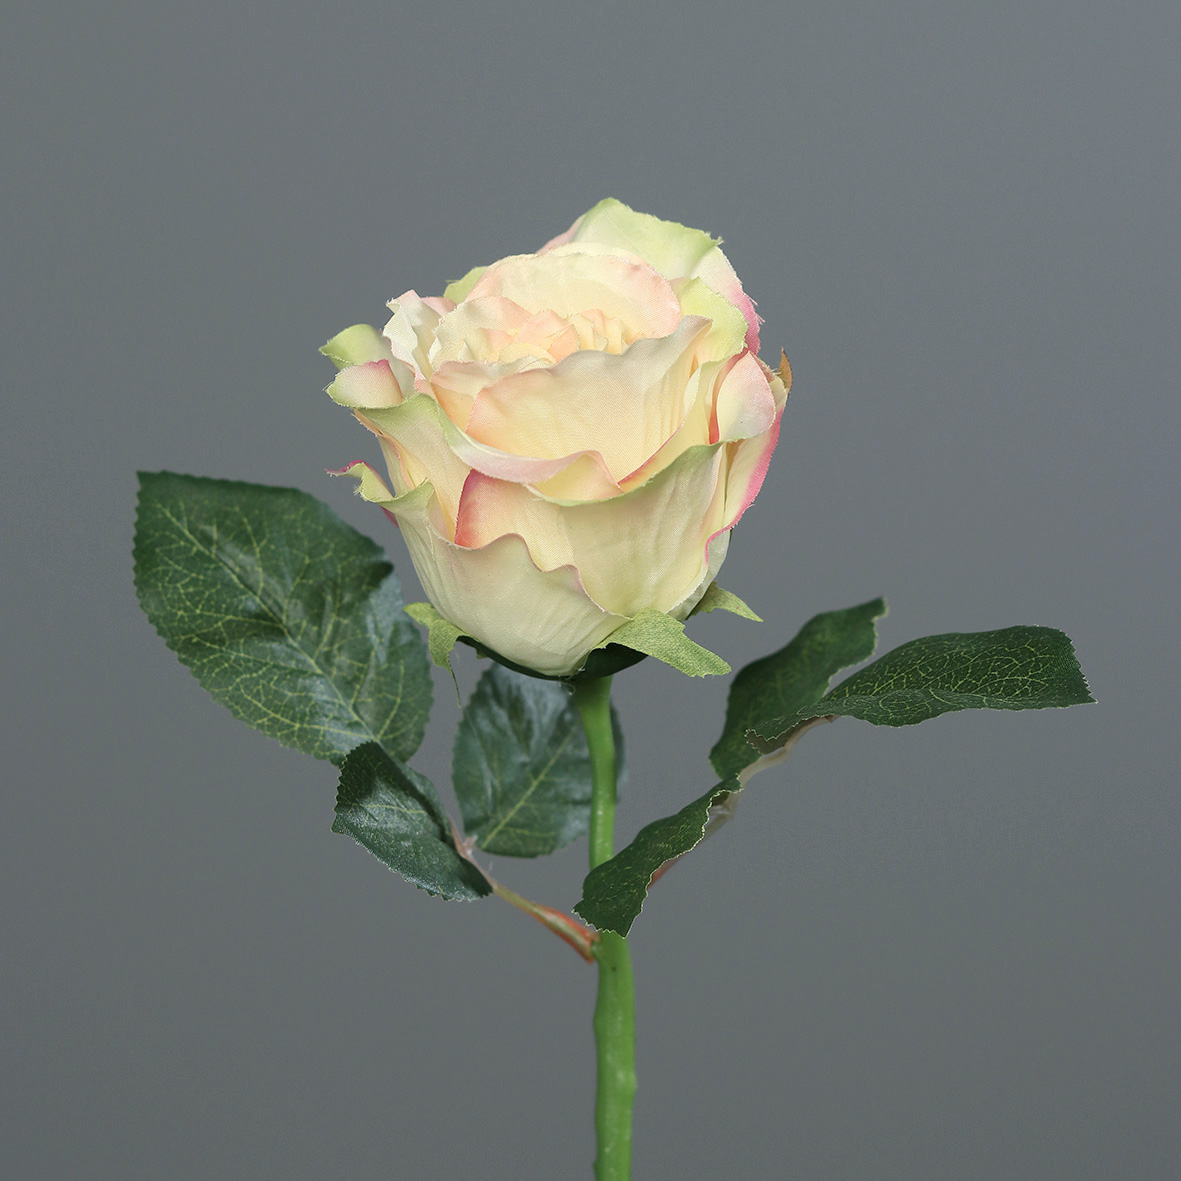 Rose 30cm gelb-peach DP Kunstblumen künstliche Blumen